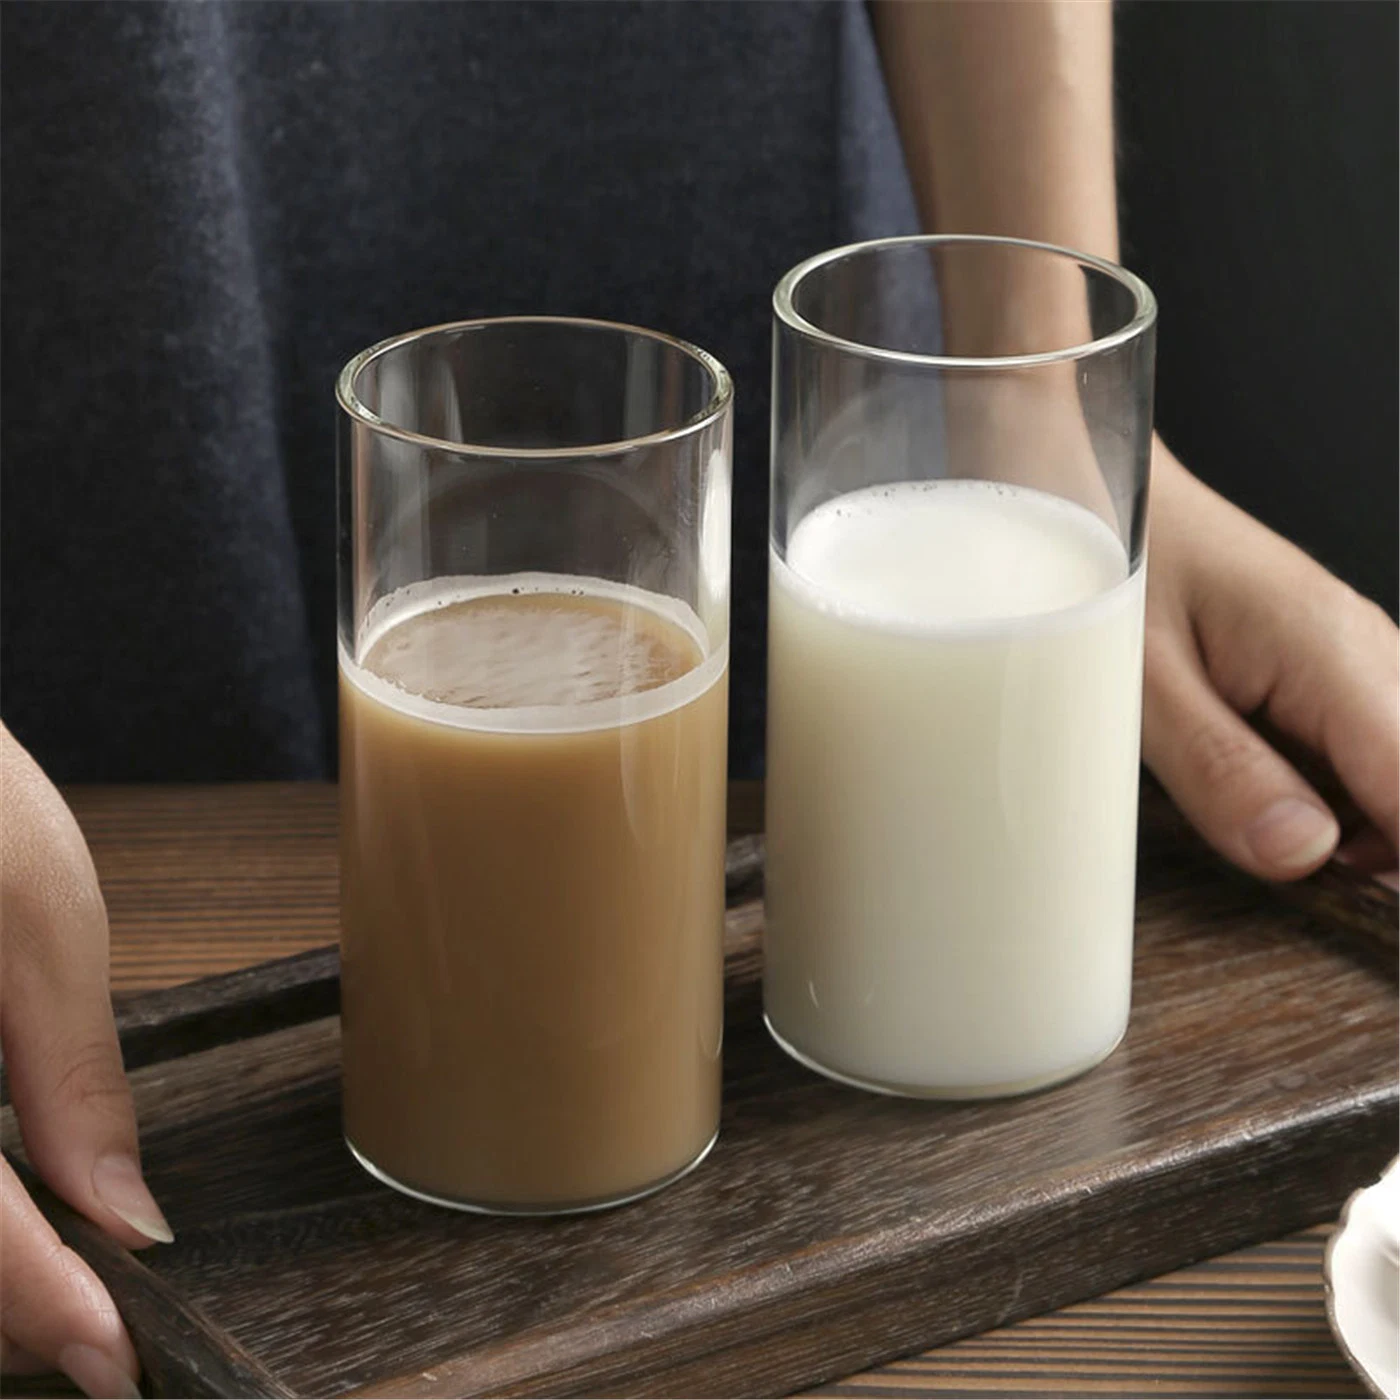 كوب قهوة من نوع واحد قابل لإعادة الاستخدام مع زجاج عالي المقاومة للحرارة من نوع بوروسيليكات